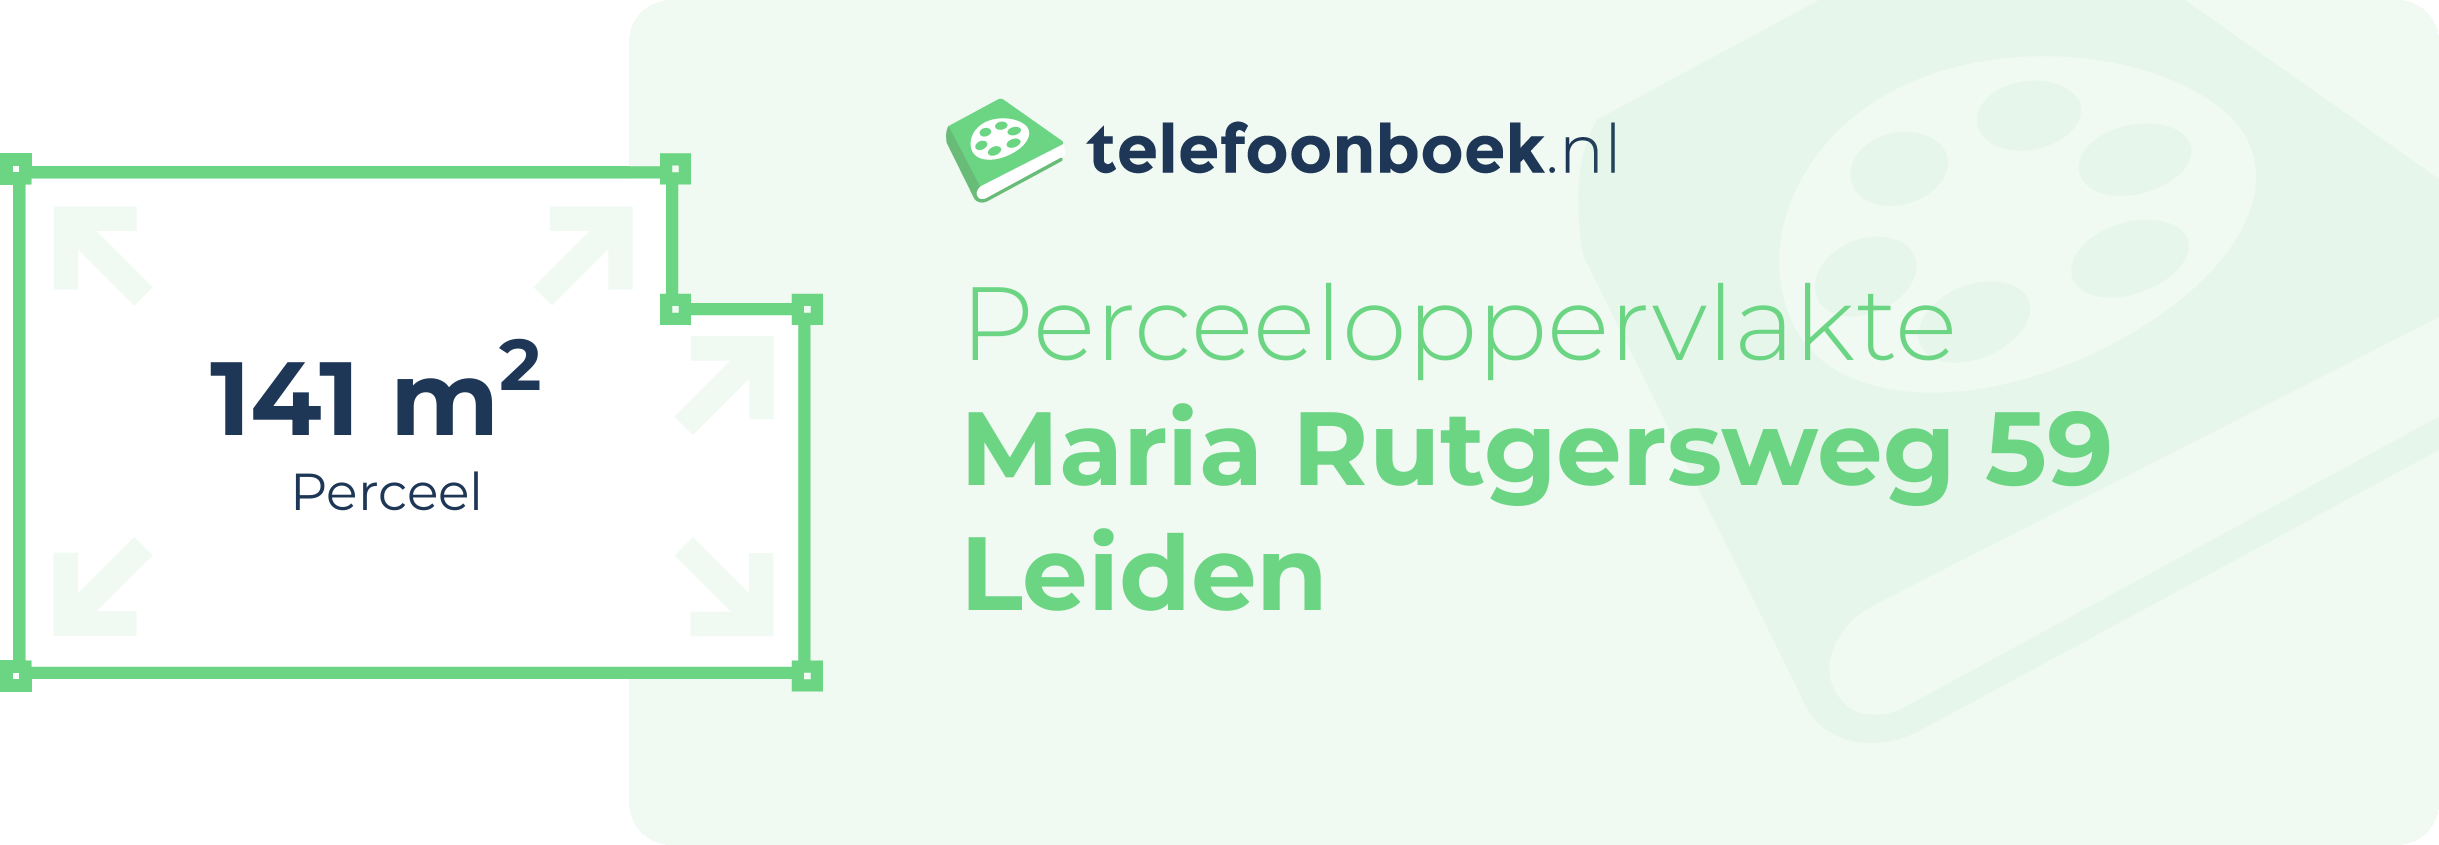 Perceeloppervlakte Maria Rutgersweg 59 Leiden